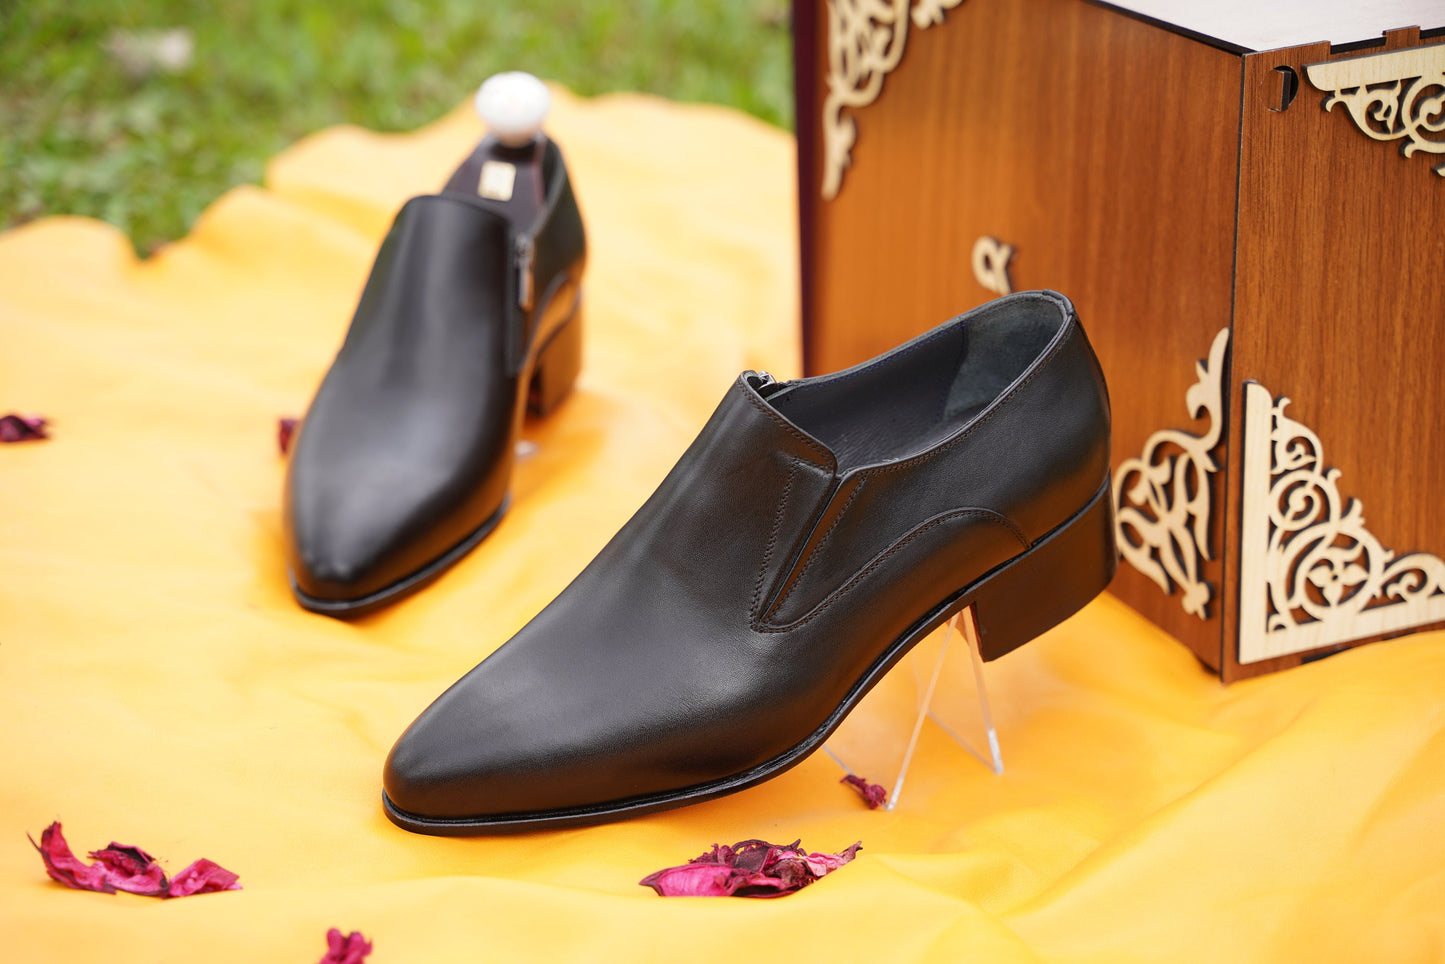 Black Men Loafer Pointed Toe Whole Cut Men Loafer Slip Ons Made-To-Order Bespoke Men Shoe Leather Sole Custom Men Shoes